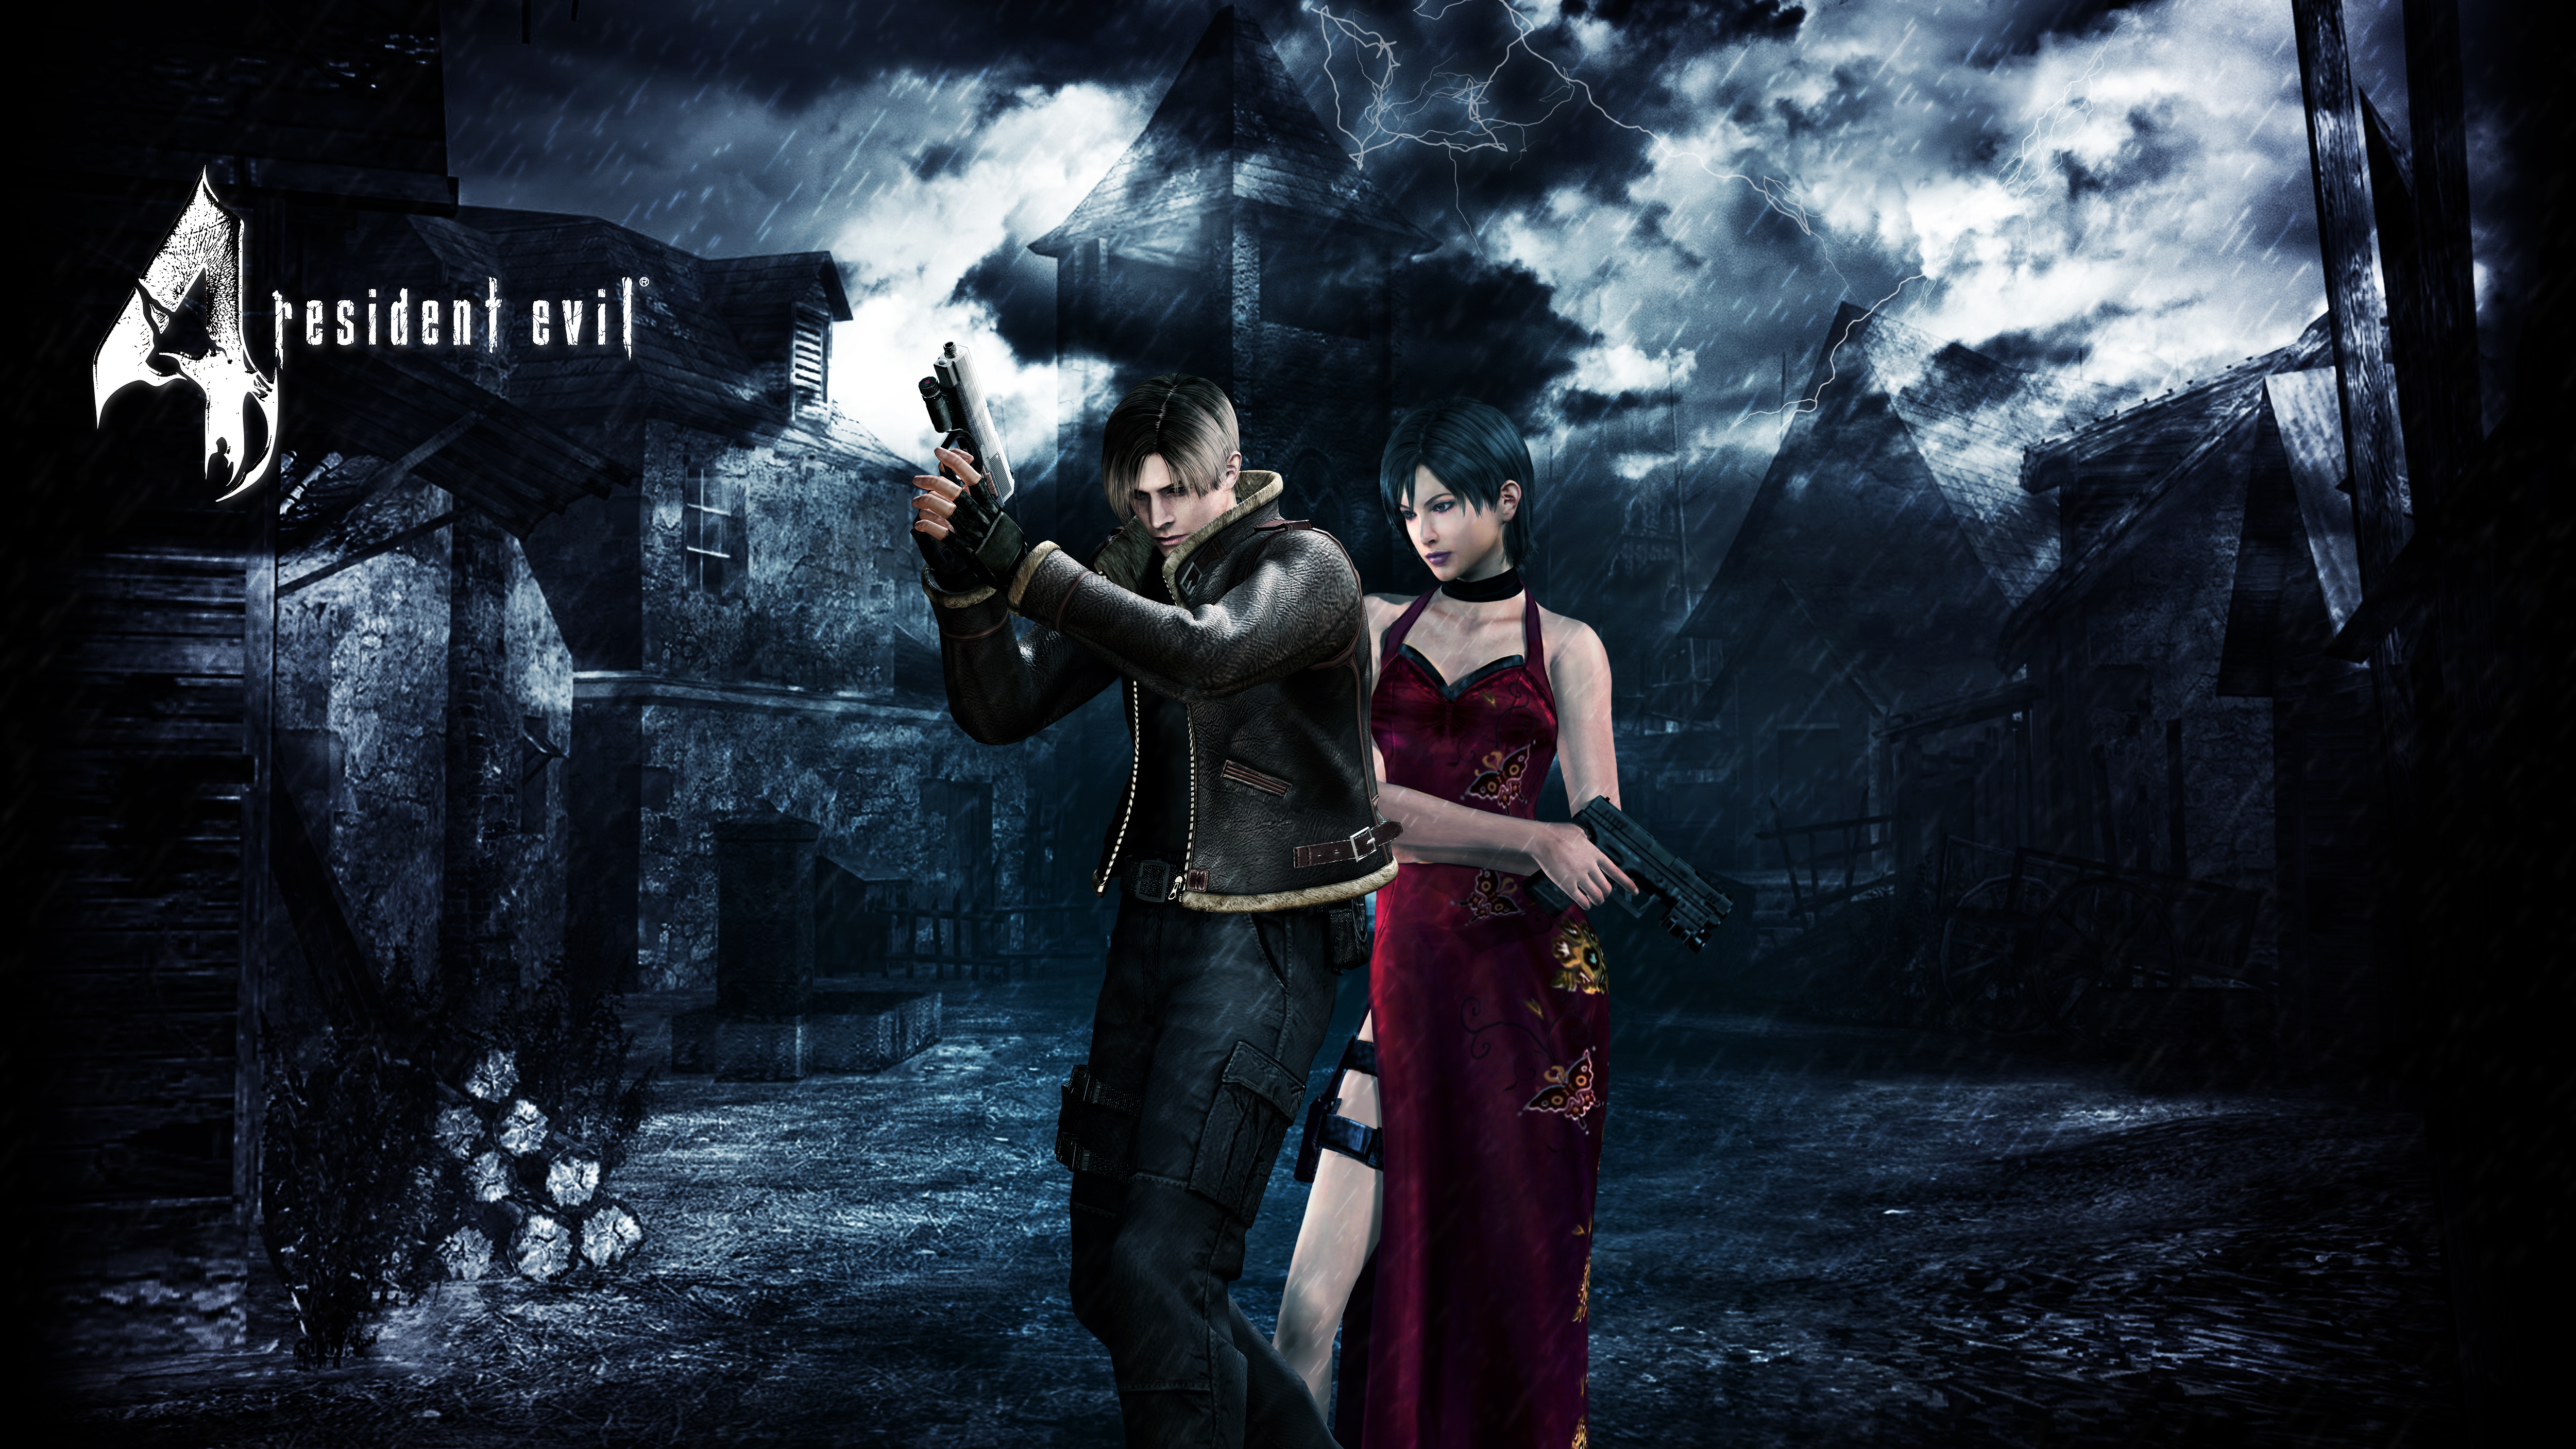 PS3] [HEN] Resident Evil 5 Rtm Tool